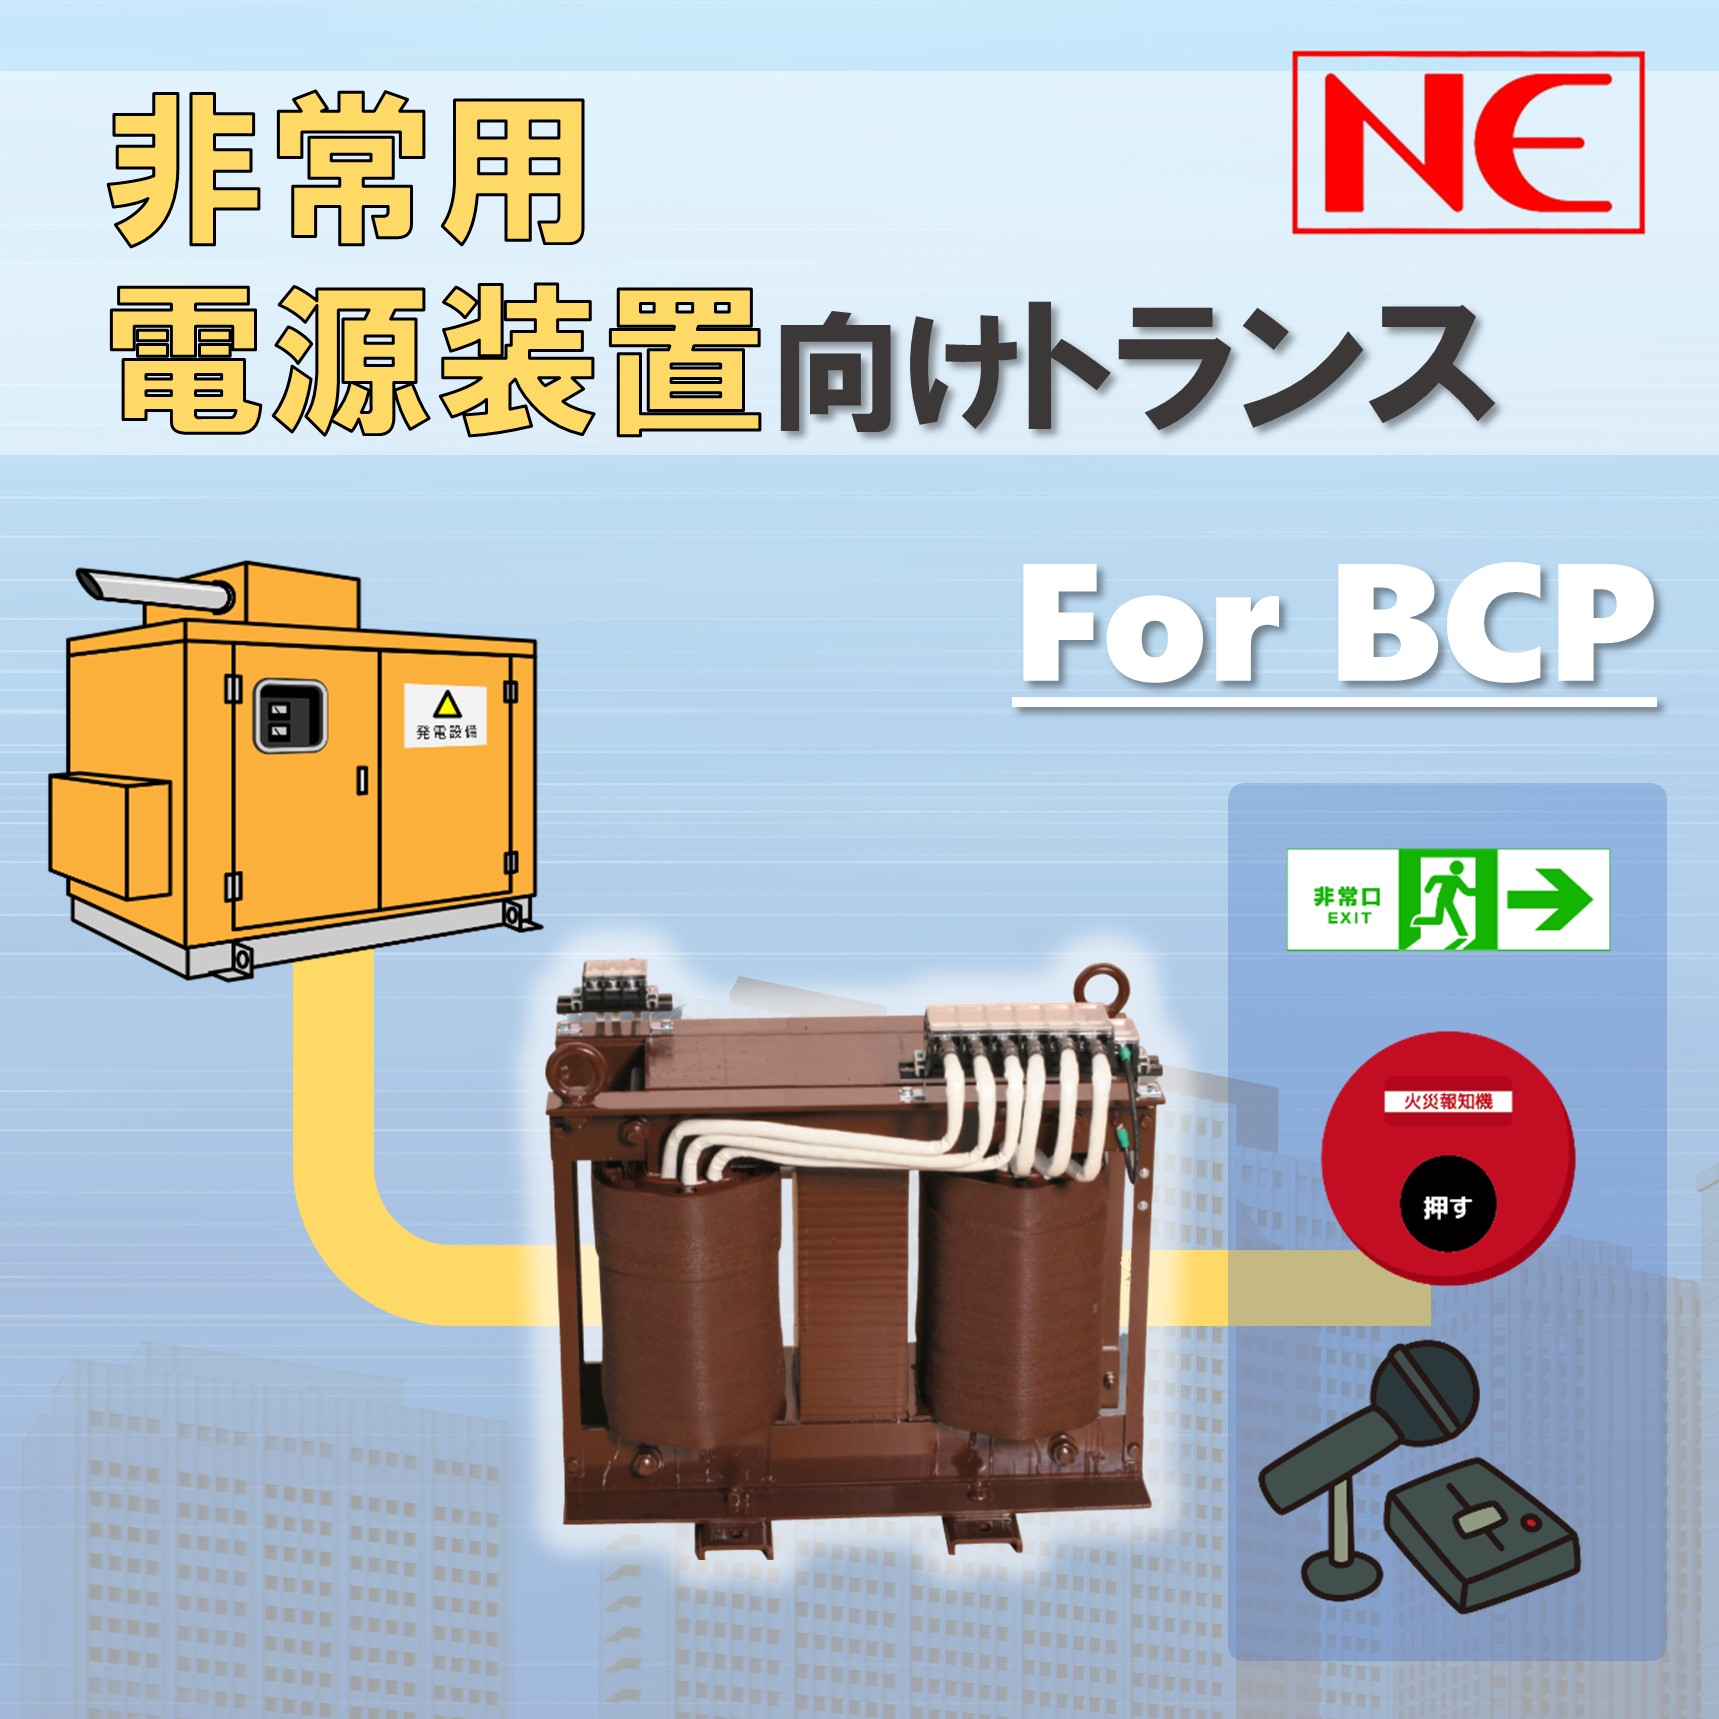 BCP対策には欠かせない非常用電源とトランス（変圧器）について